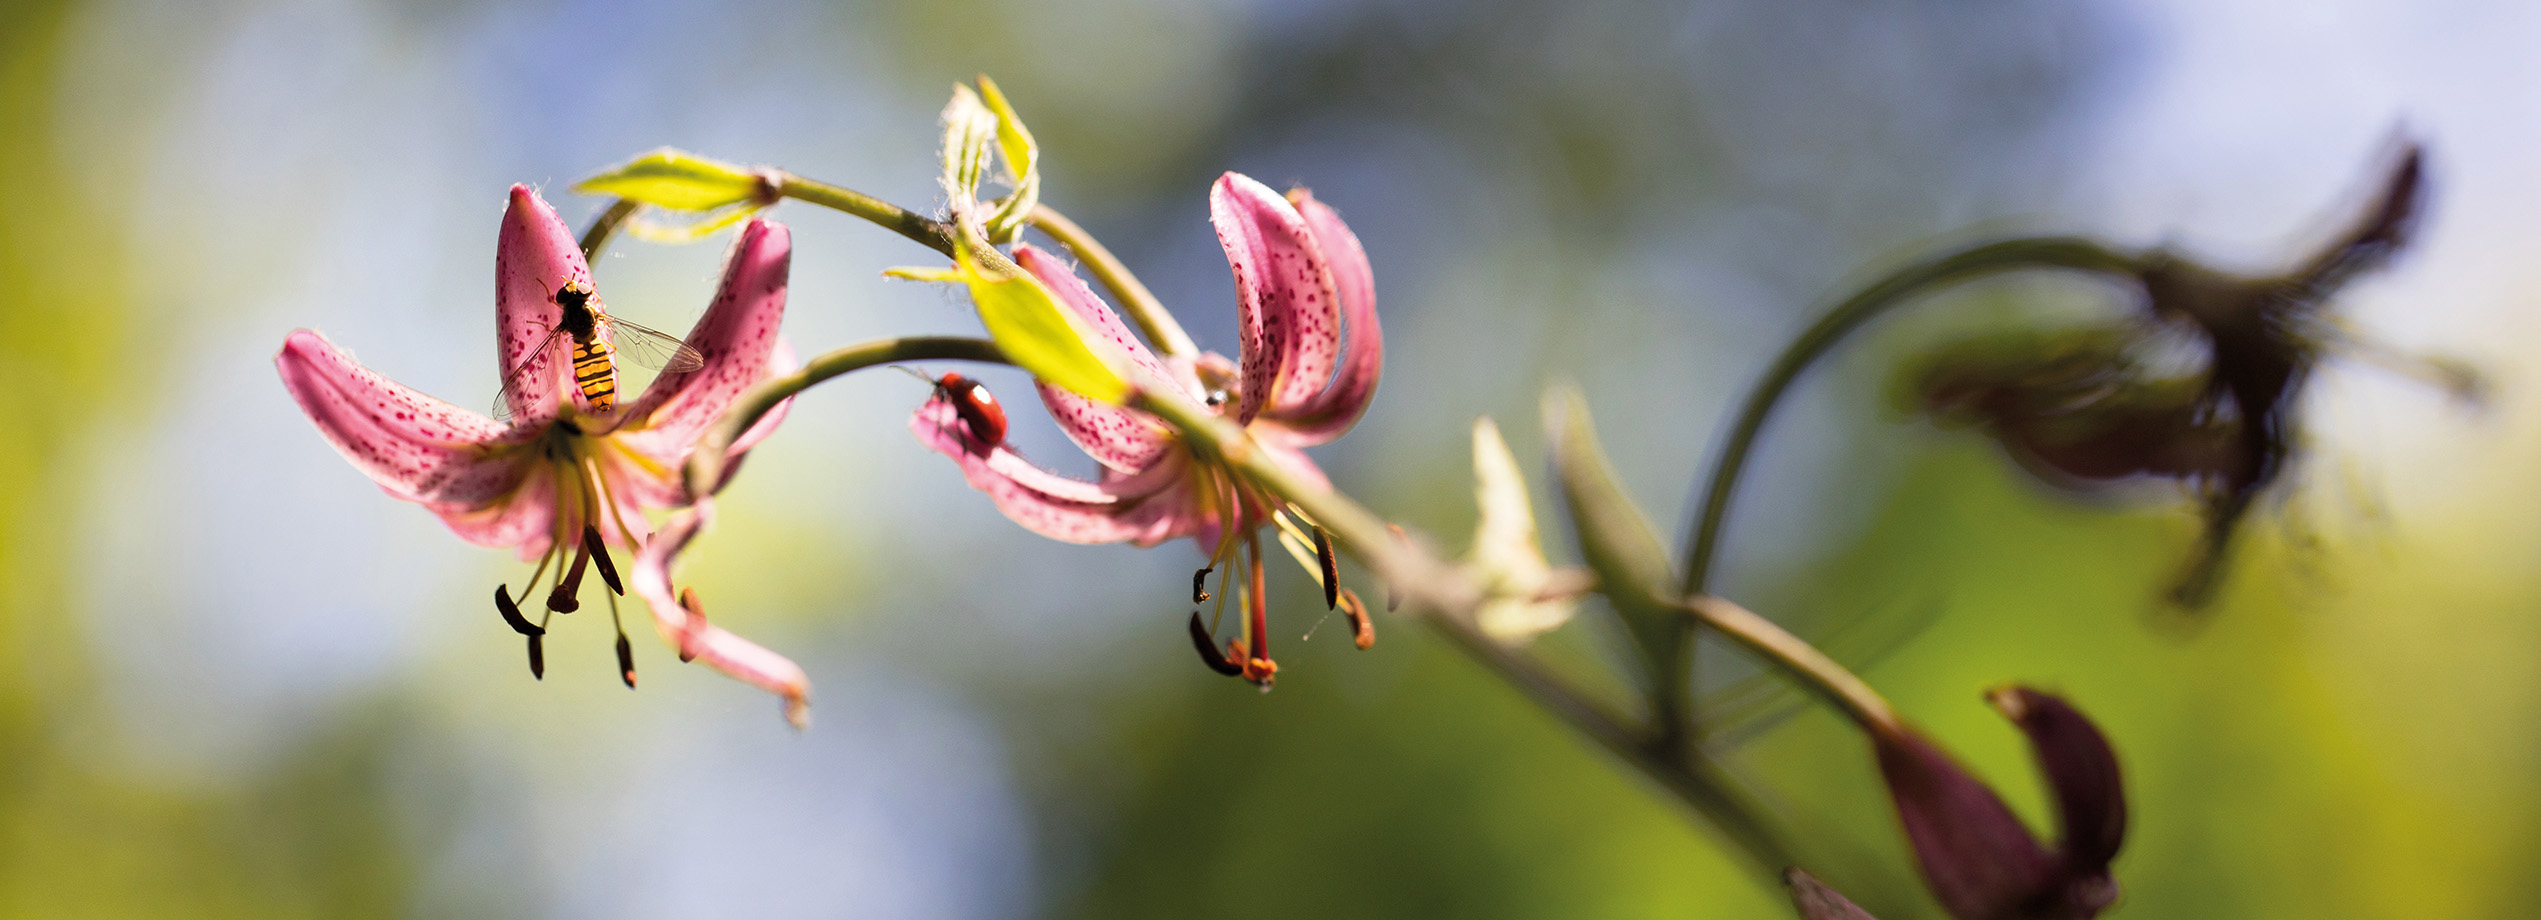 Photo de fleurs de lys martagon roses avec une guêpe prise par Bernard Gauthier. Cette image montre les détails délicats des fleurs et de l'insecte. Magazine de photographie de nature